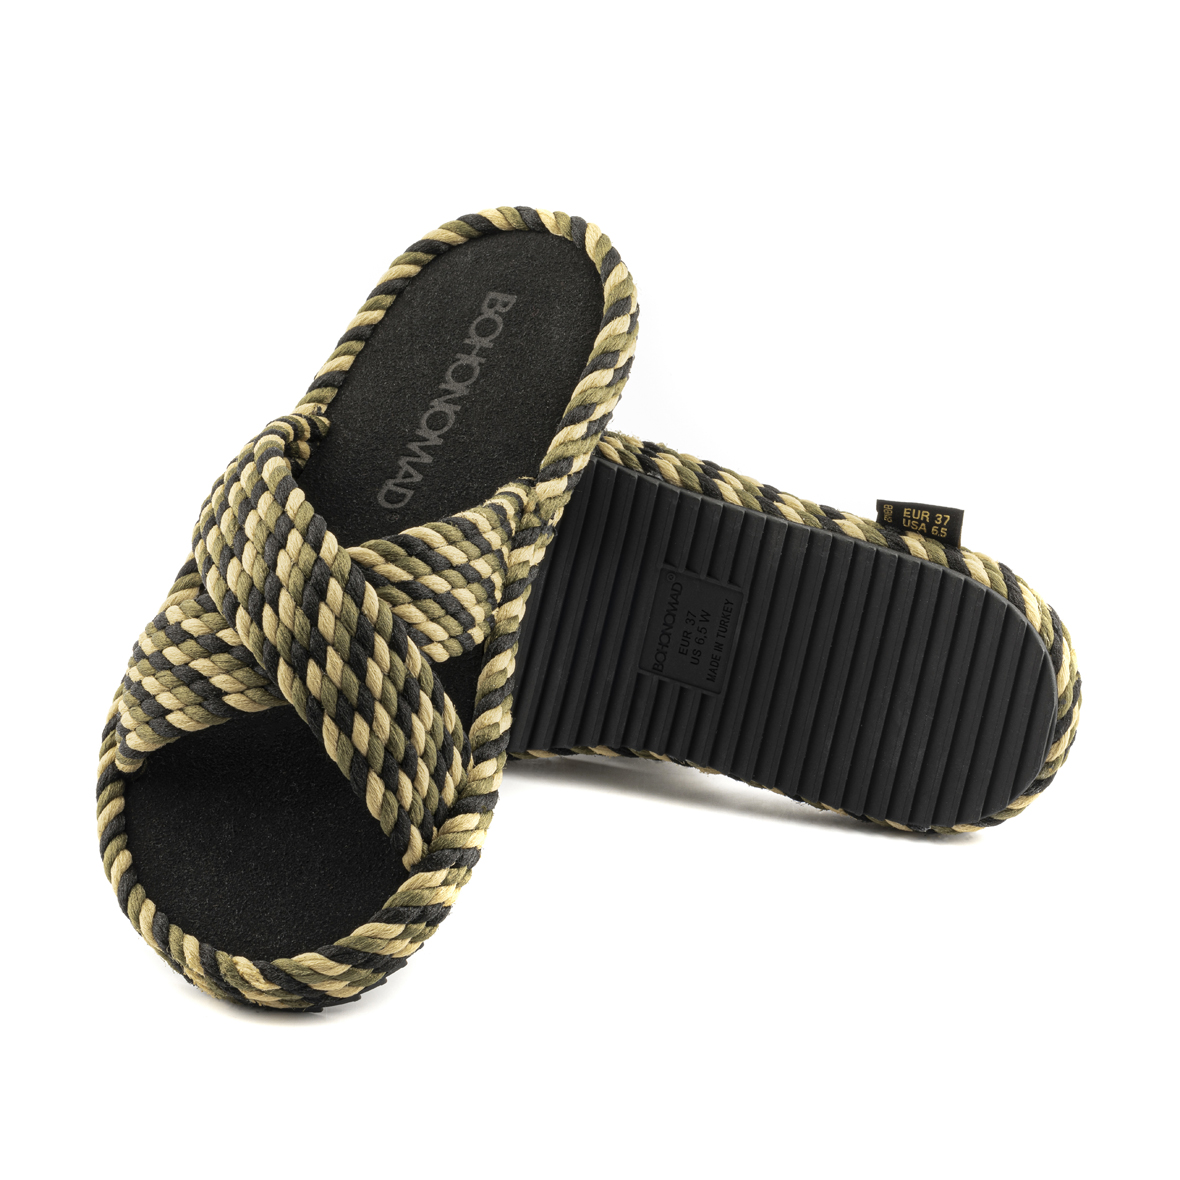 Barcelona Women Memory Foam Rope Slipper – Tricolor ( Khaki/Beige/Black )